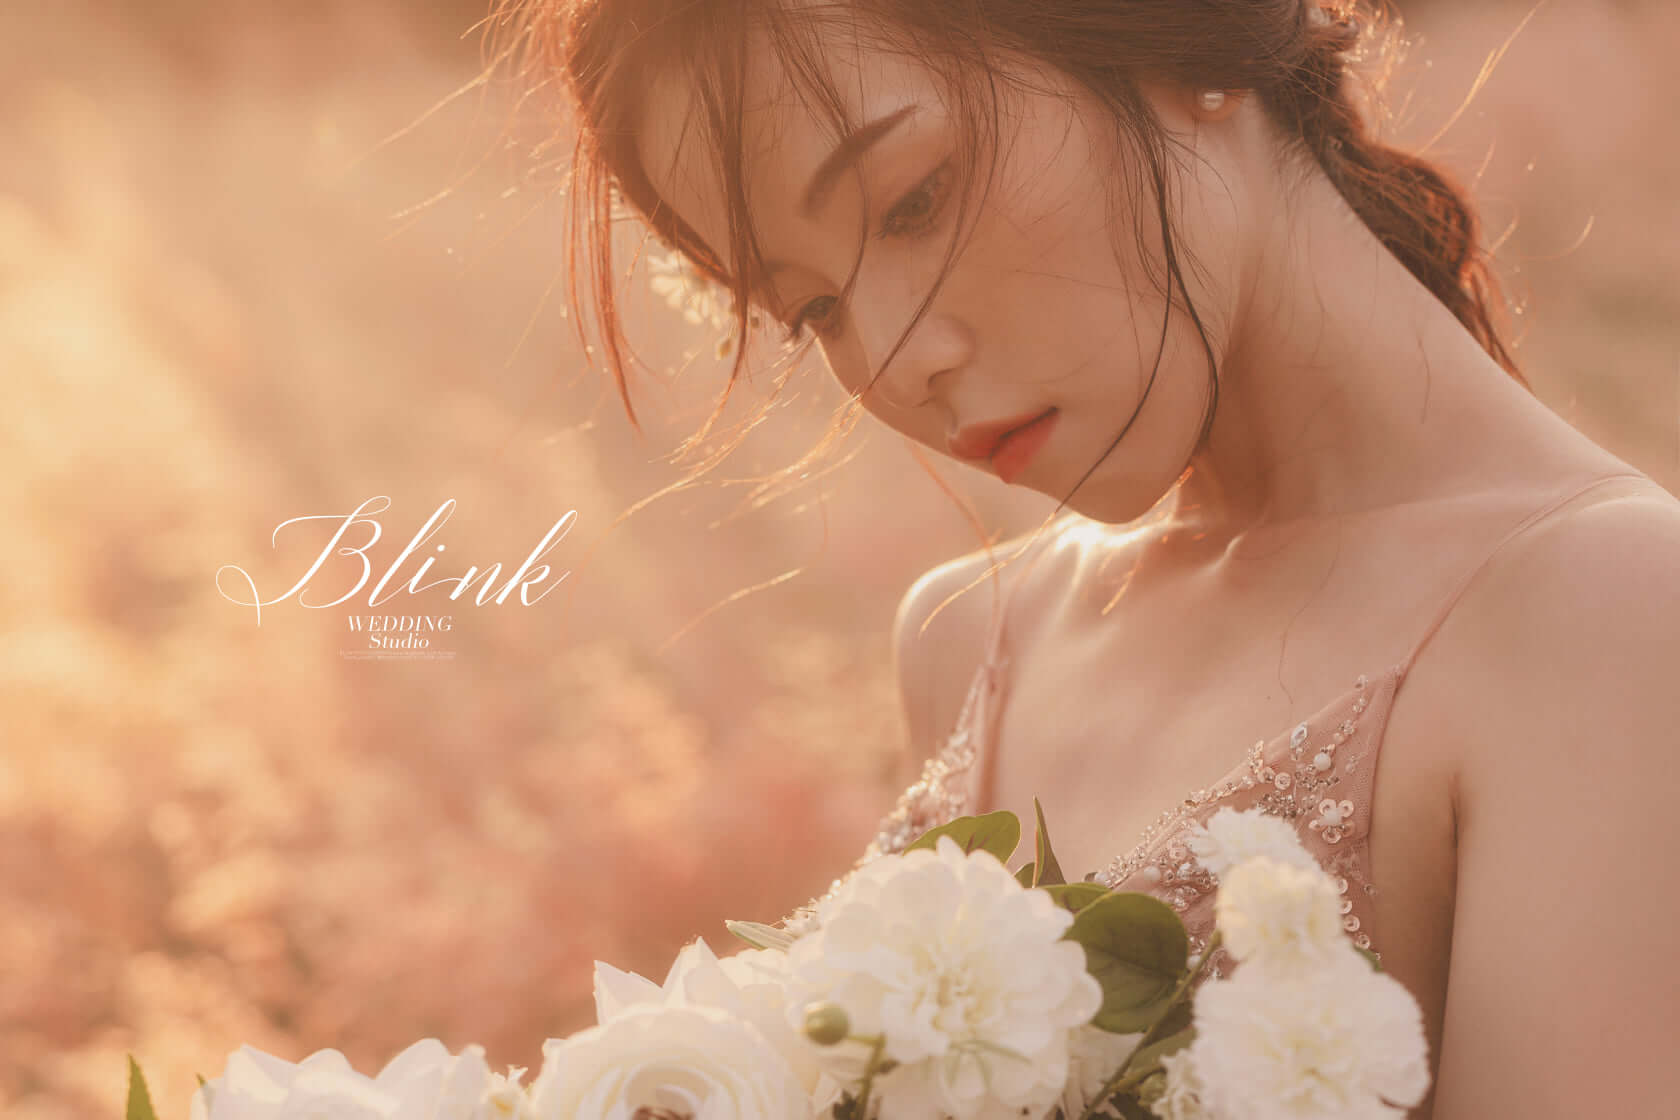 Blink studio / 育慧 婚紗照分享 | 愛情蔓延精緻婚紗 - 禮服出租 | 婚紗推薦 | 台中婚紗